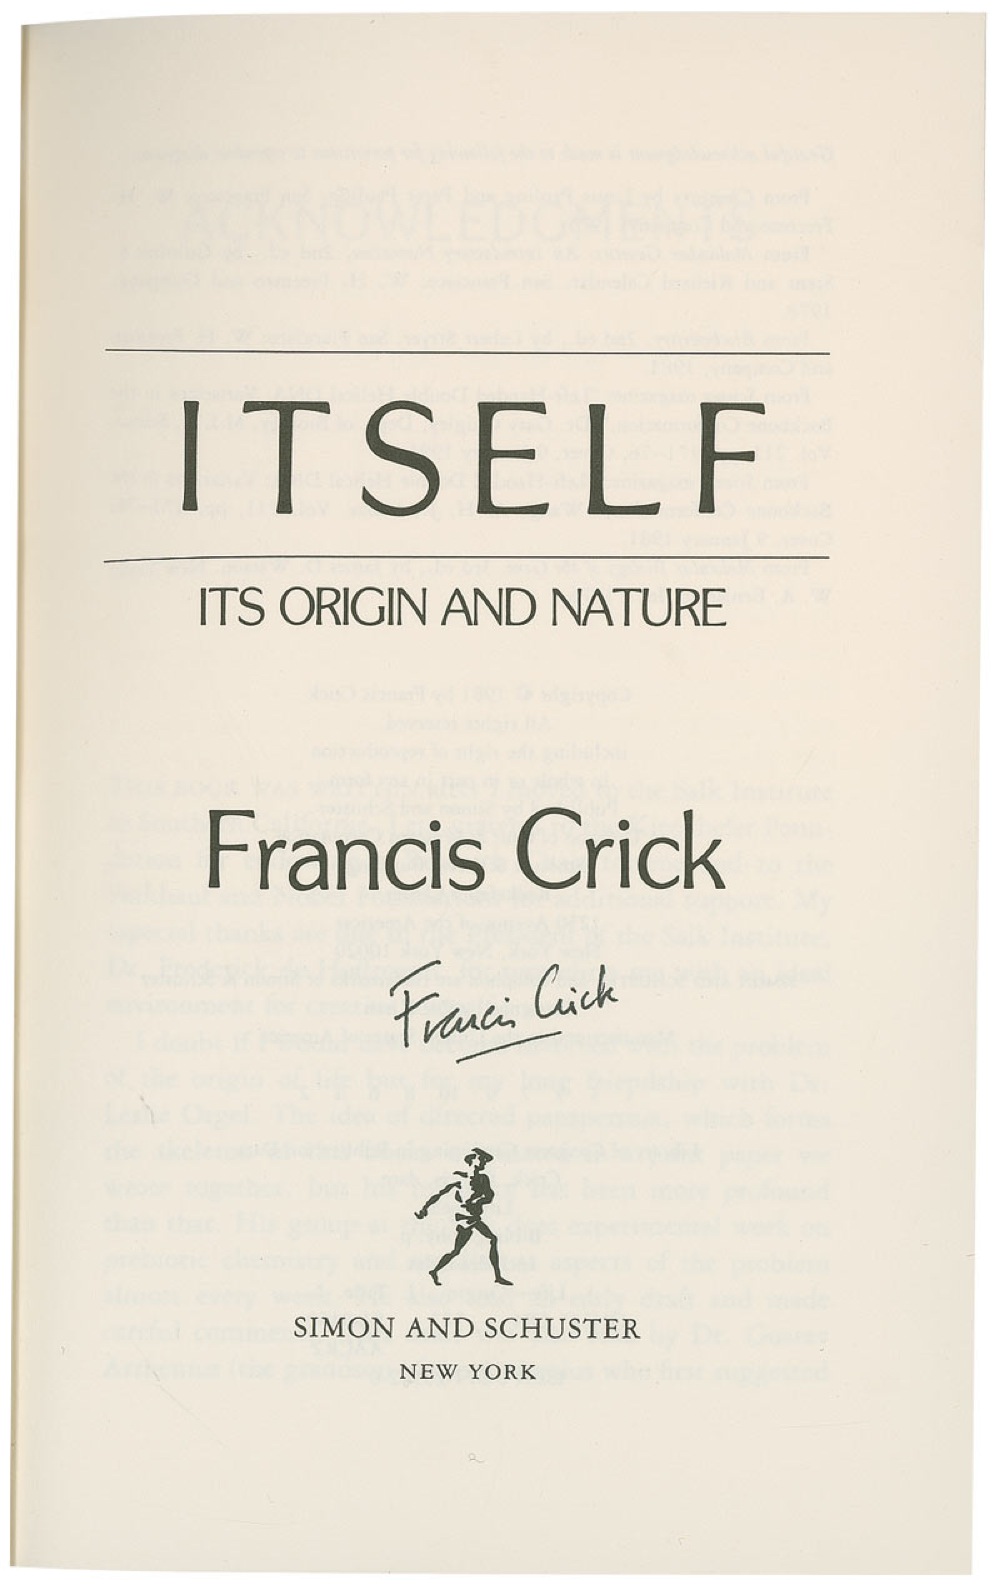 Lot #240 DNA: Francis Crick